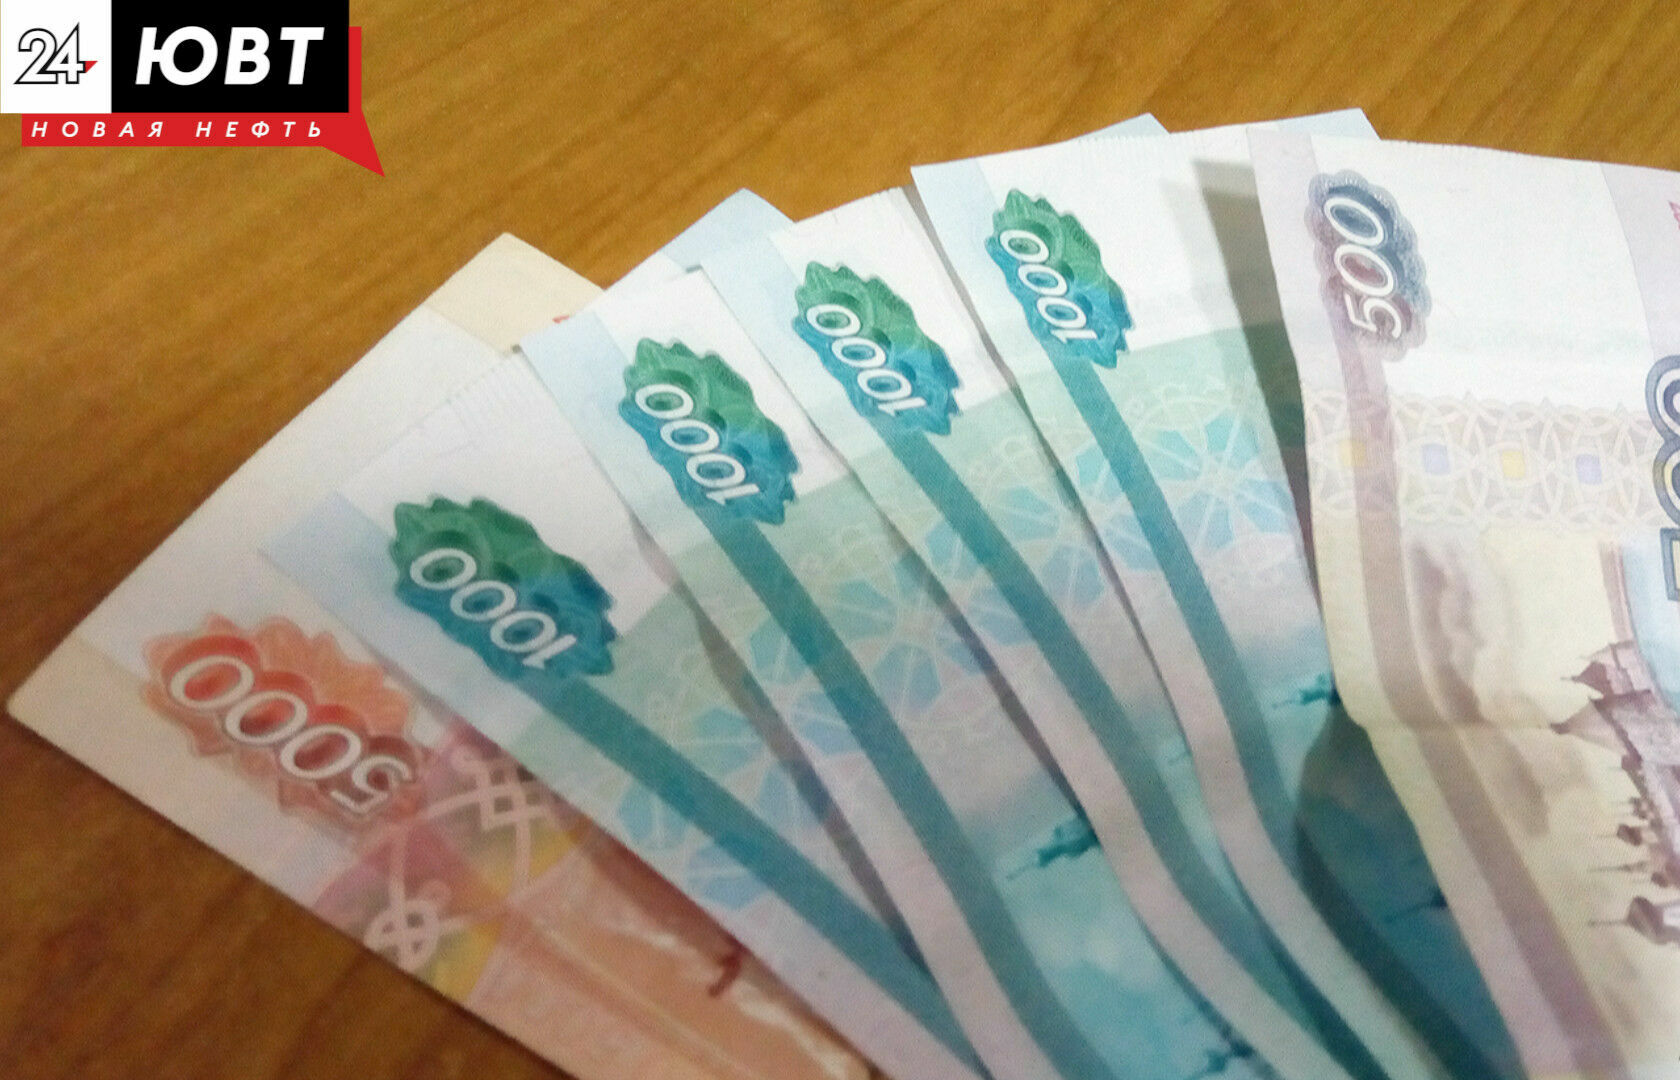 Альметьевец, пытаясь заработать на инвестициях, лишился 500 тысяч рублей